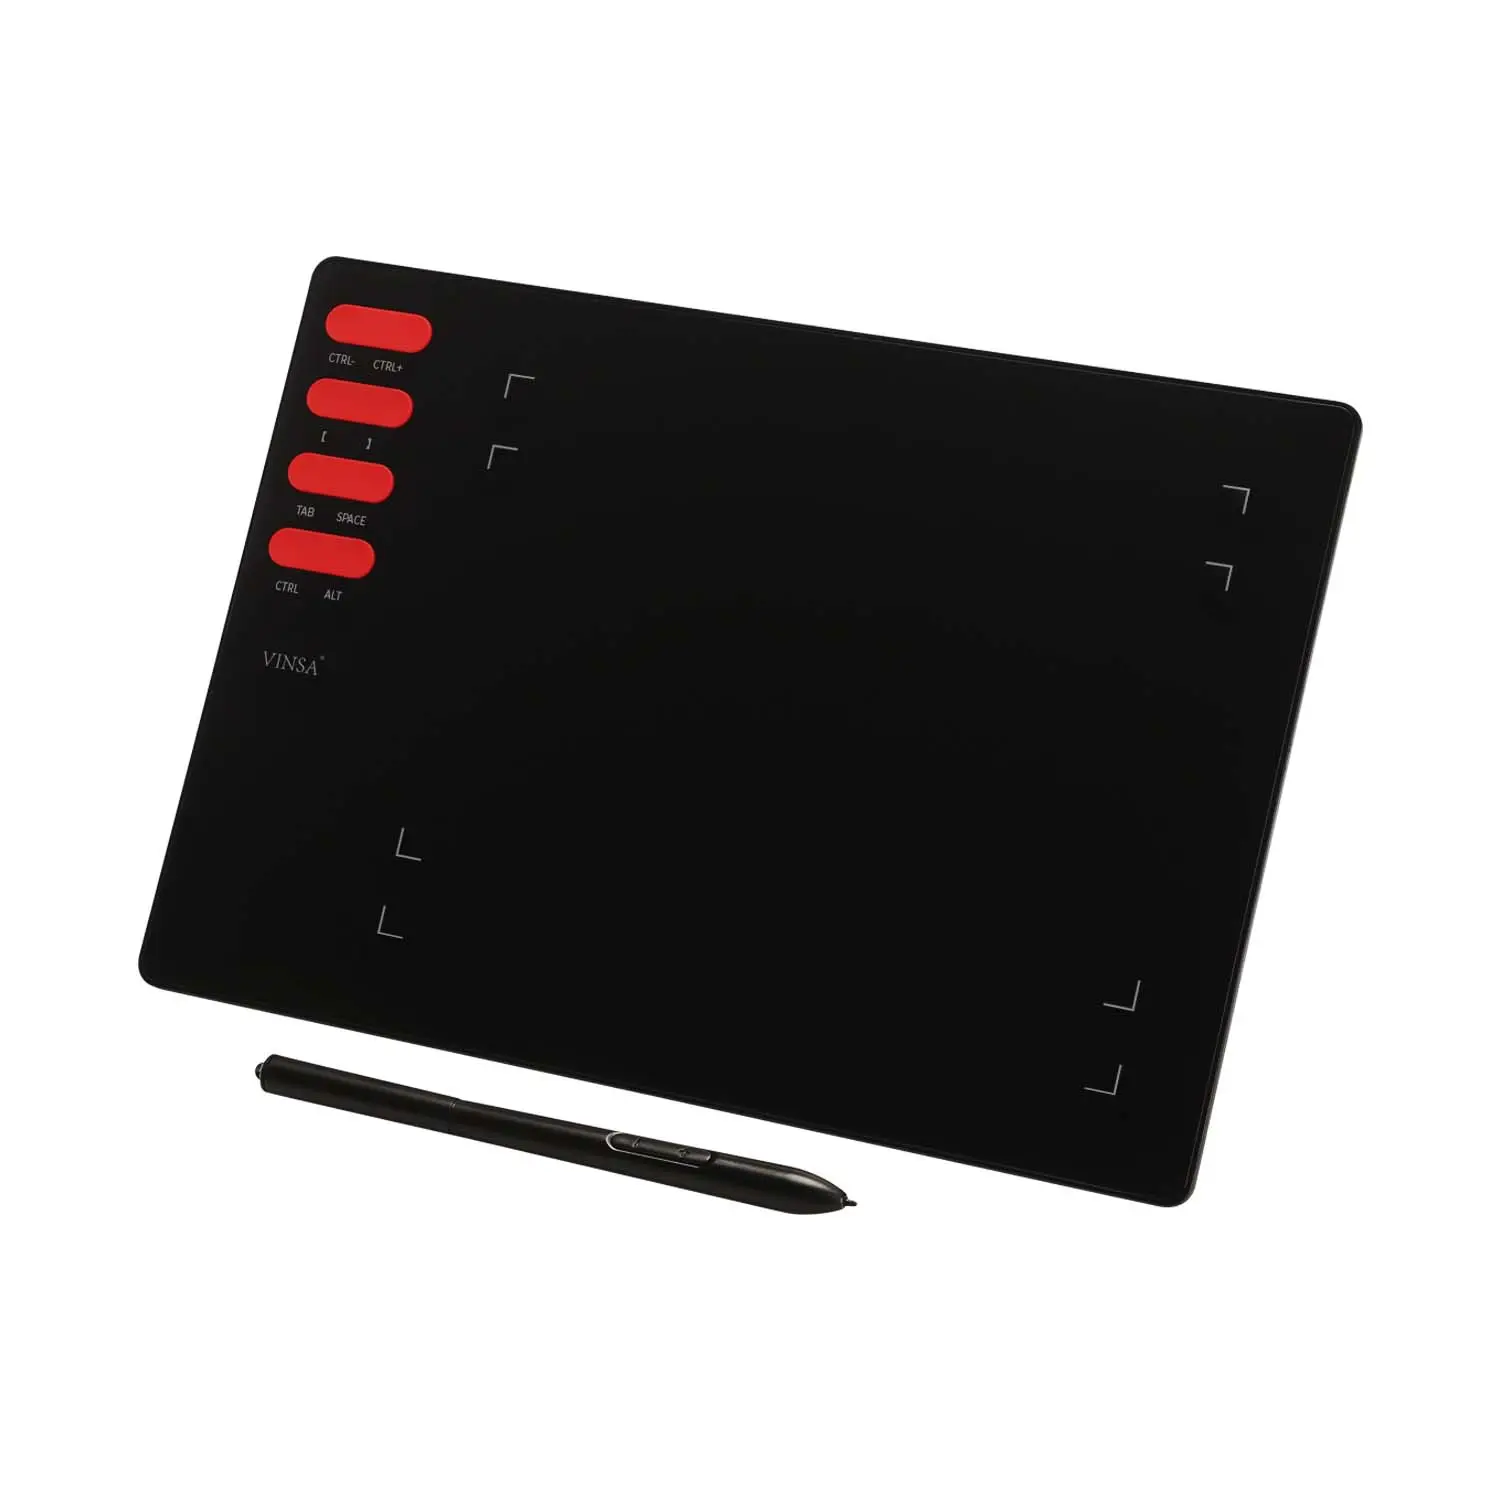 Dünne und leichte Vinsa T505 Telefon-PC-Unterstützung Drucke mpfindlichkeit 8192 Batterie freier passiver Stift Signature Digital Pen Tablet